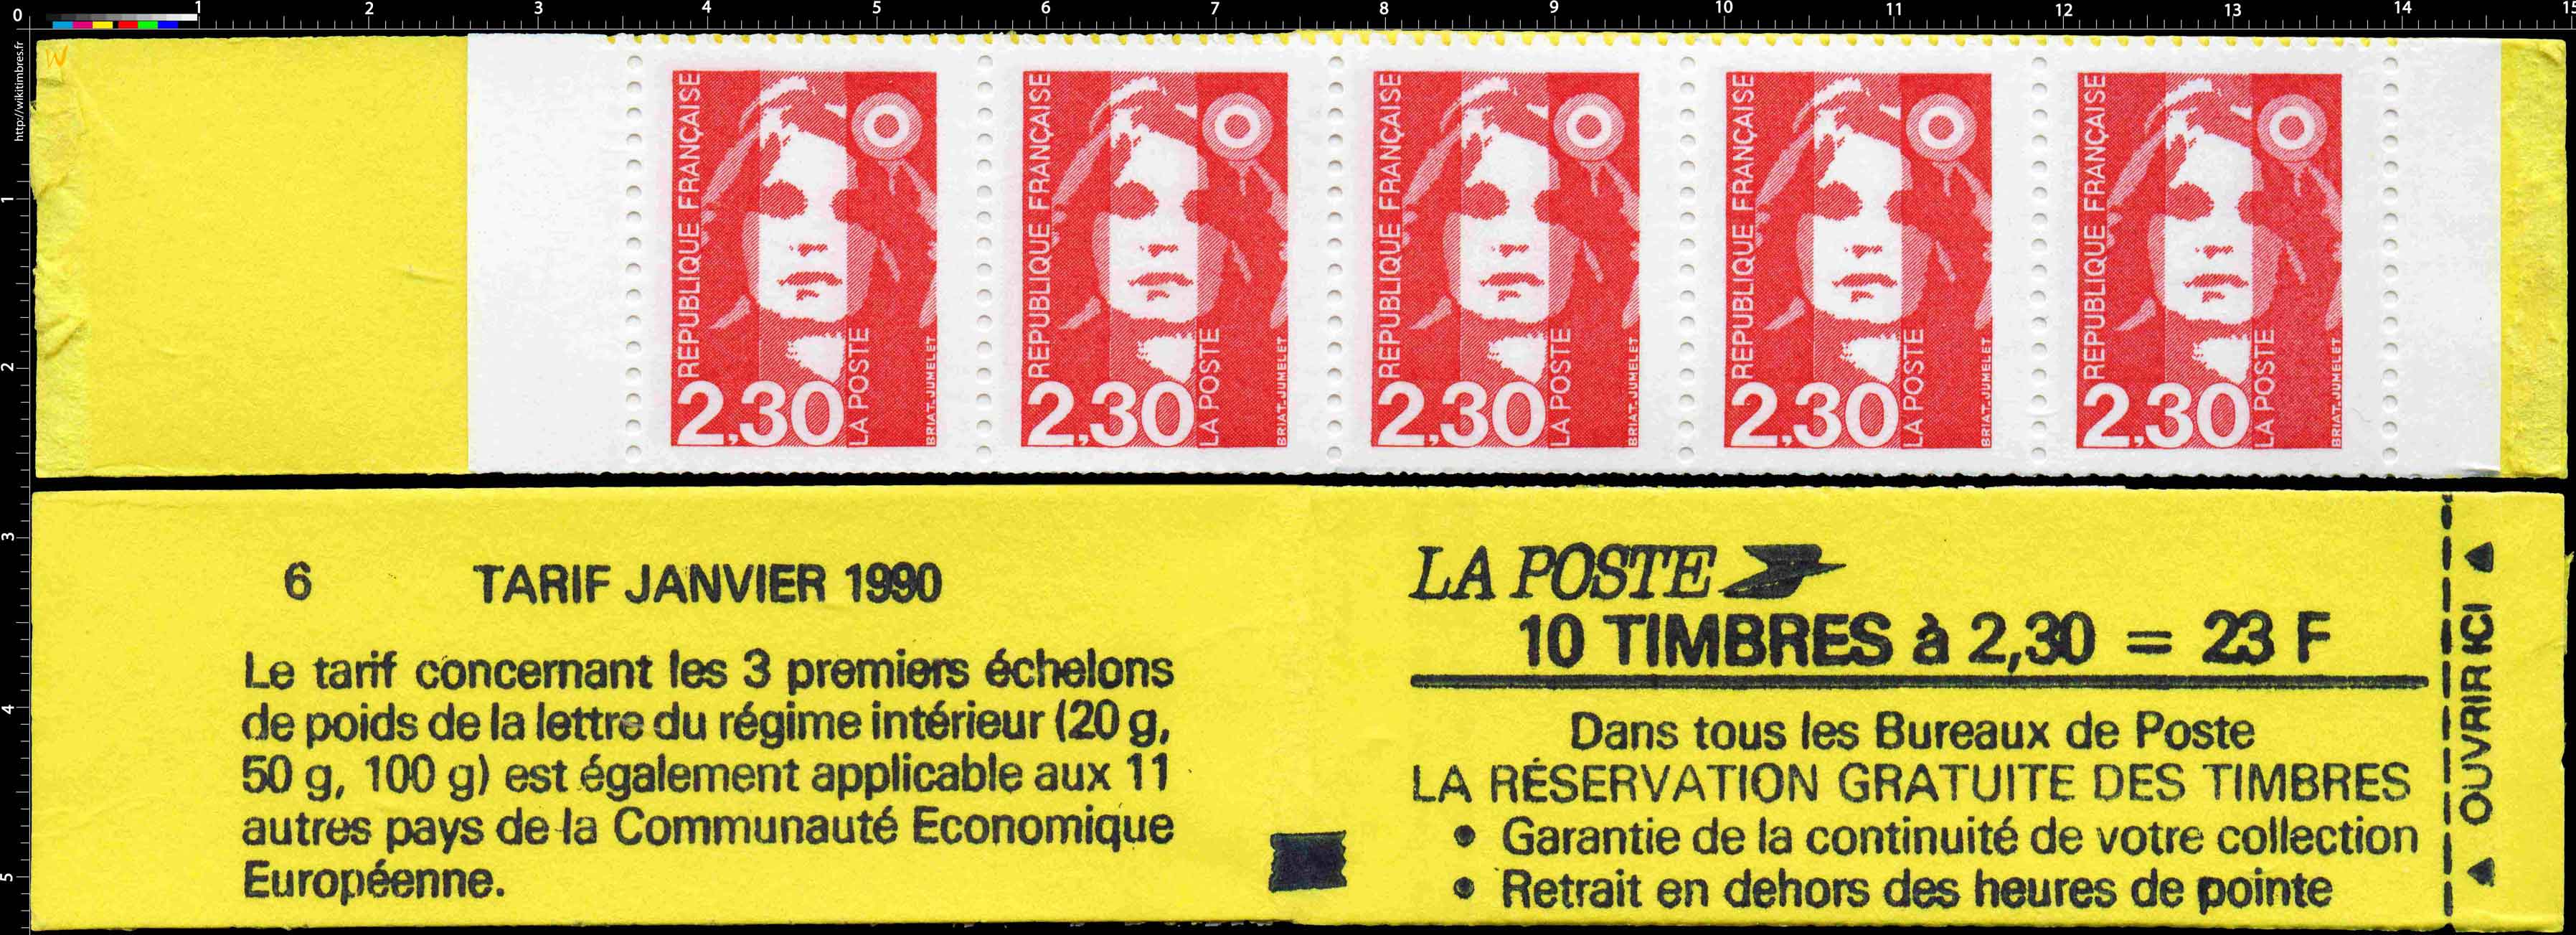 Réservation gratuite des timbres